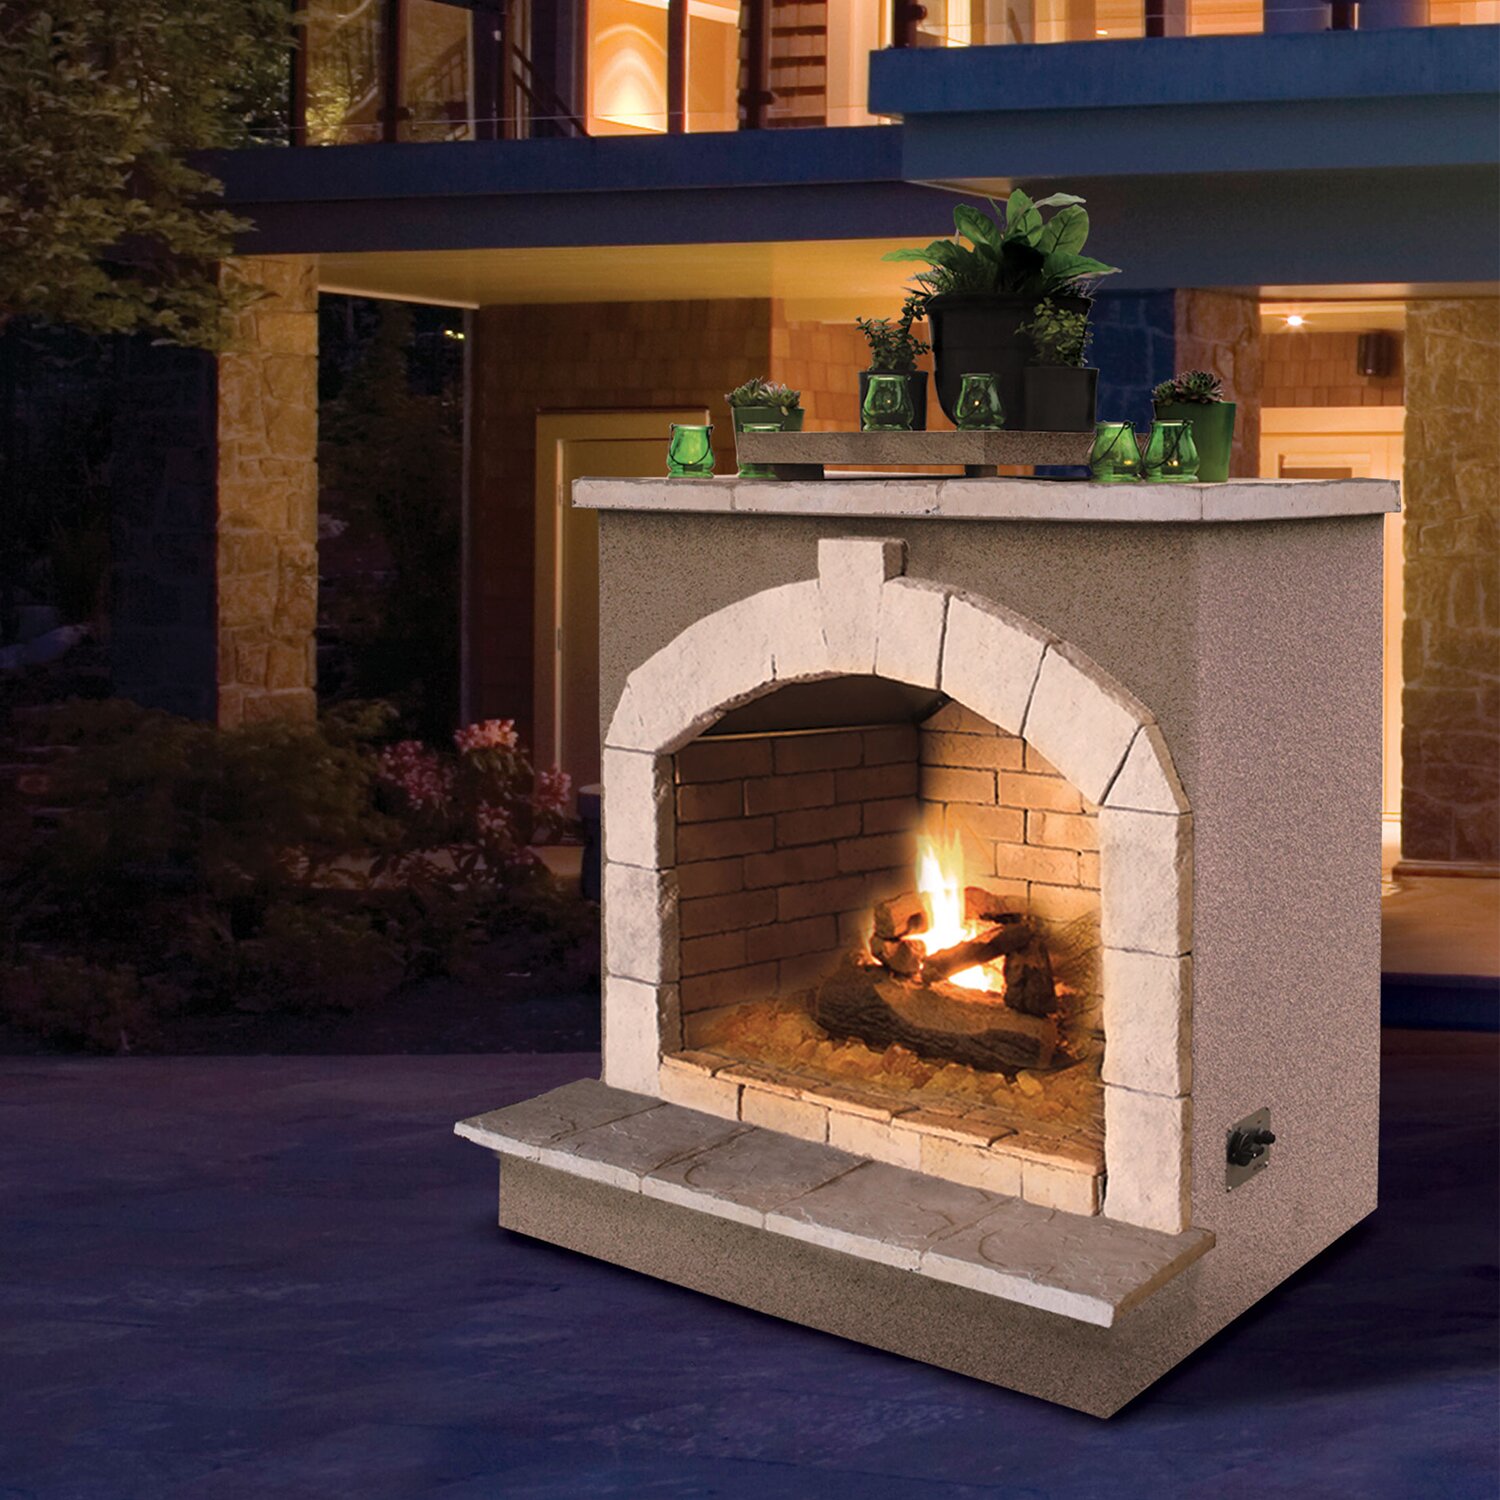 CalFlame Propane Gas Outdoor Fireplace & Reviews | Wayfair